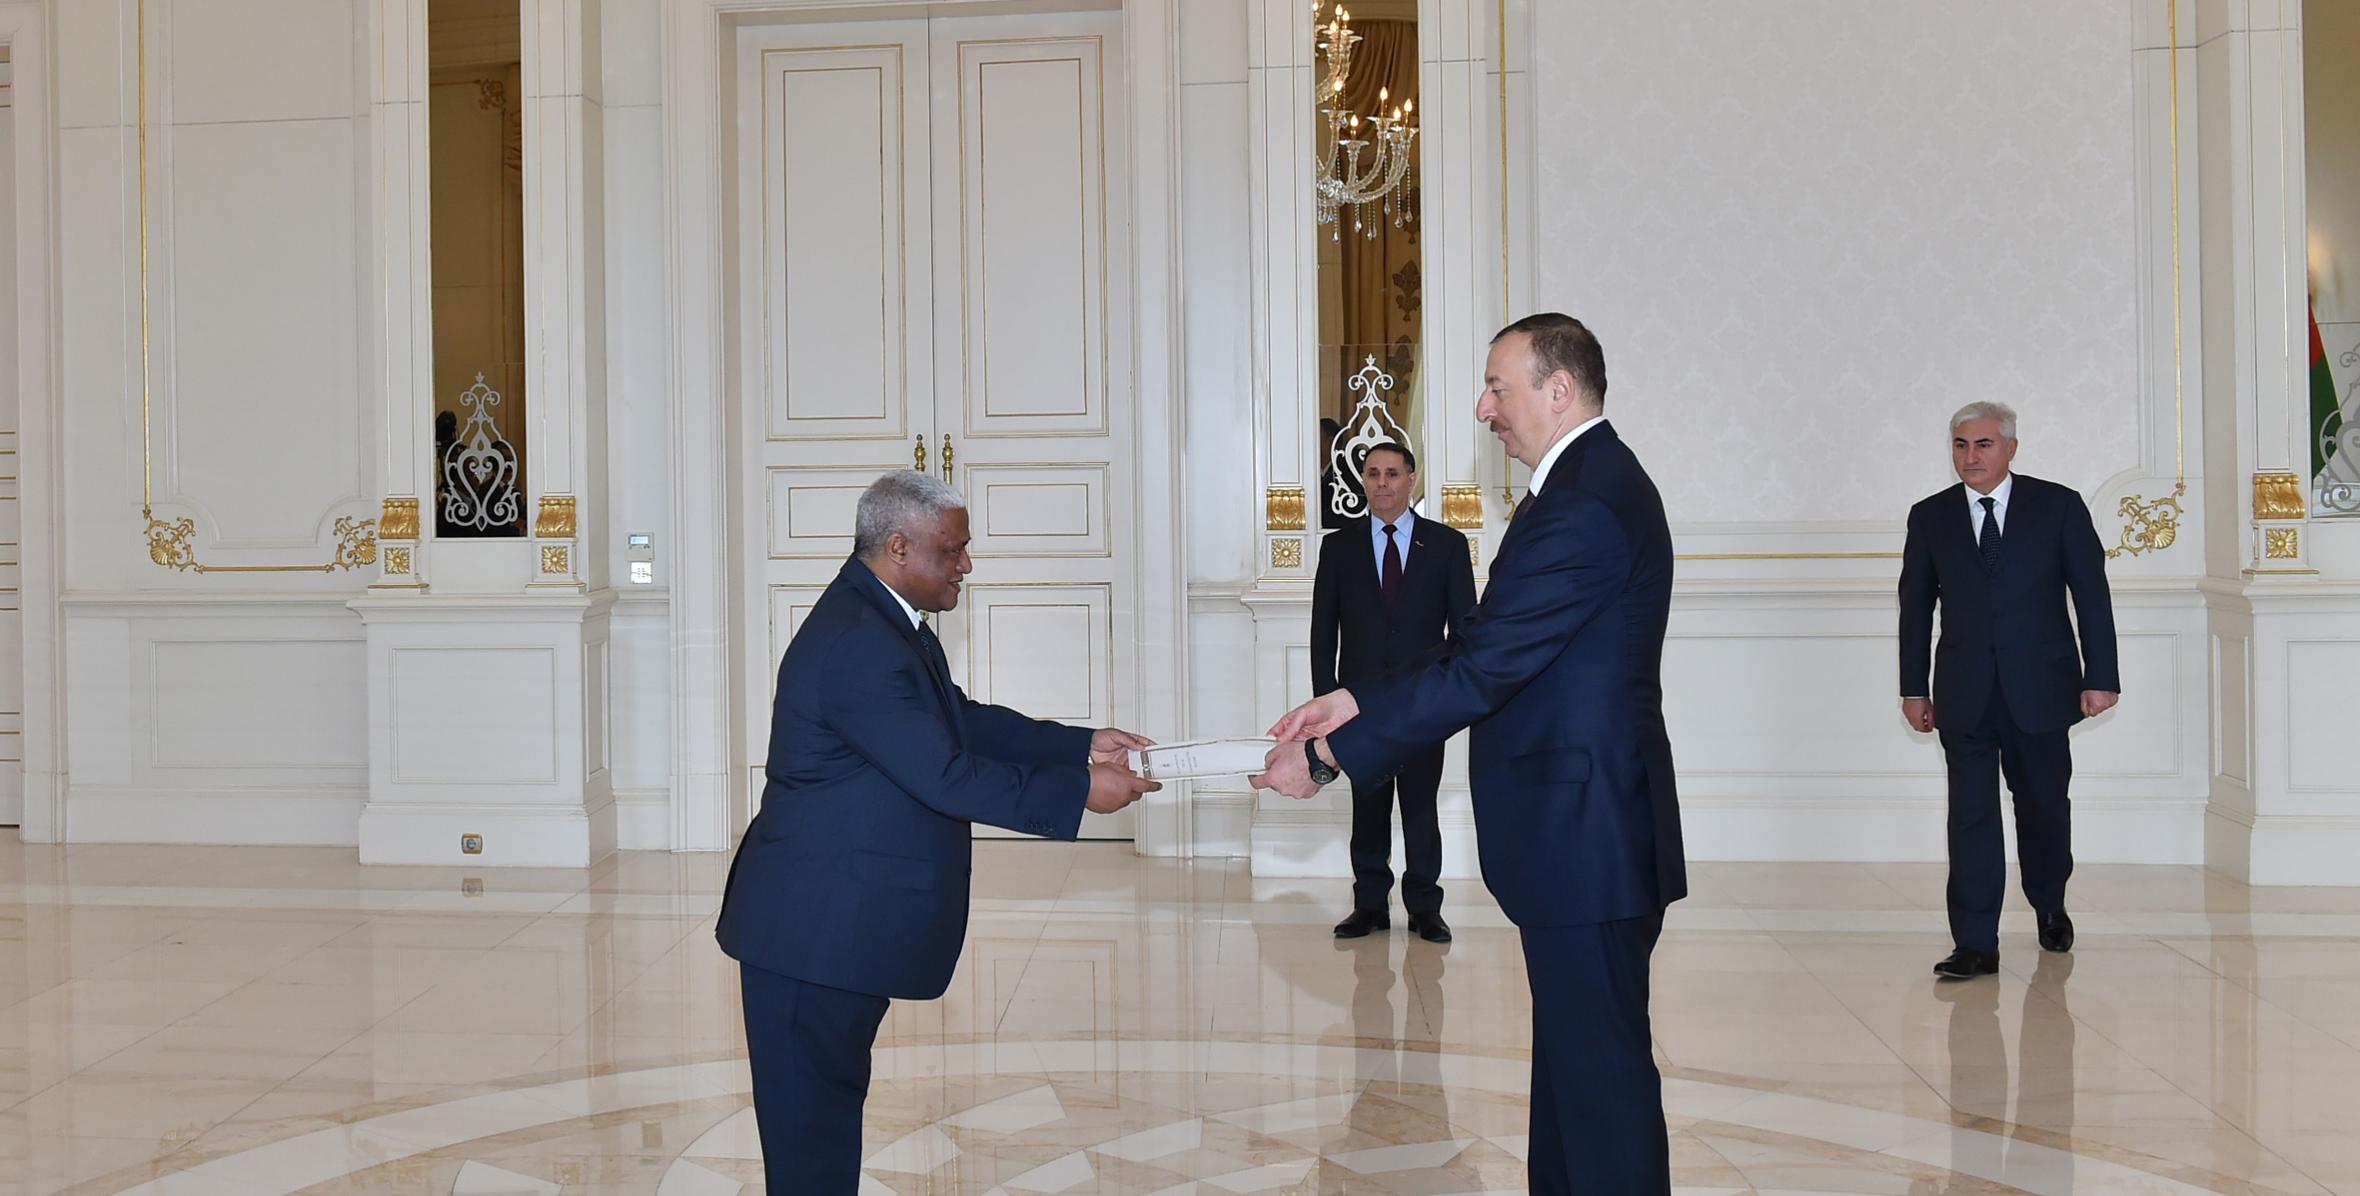 Ильхам Алиев принял верительные грамоты новоназначенного посла Эфиопии в Азербайджане